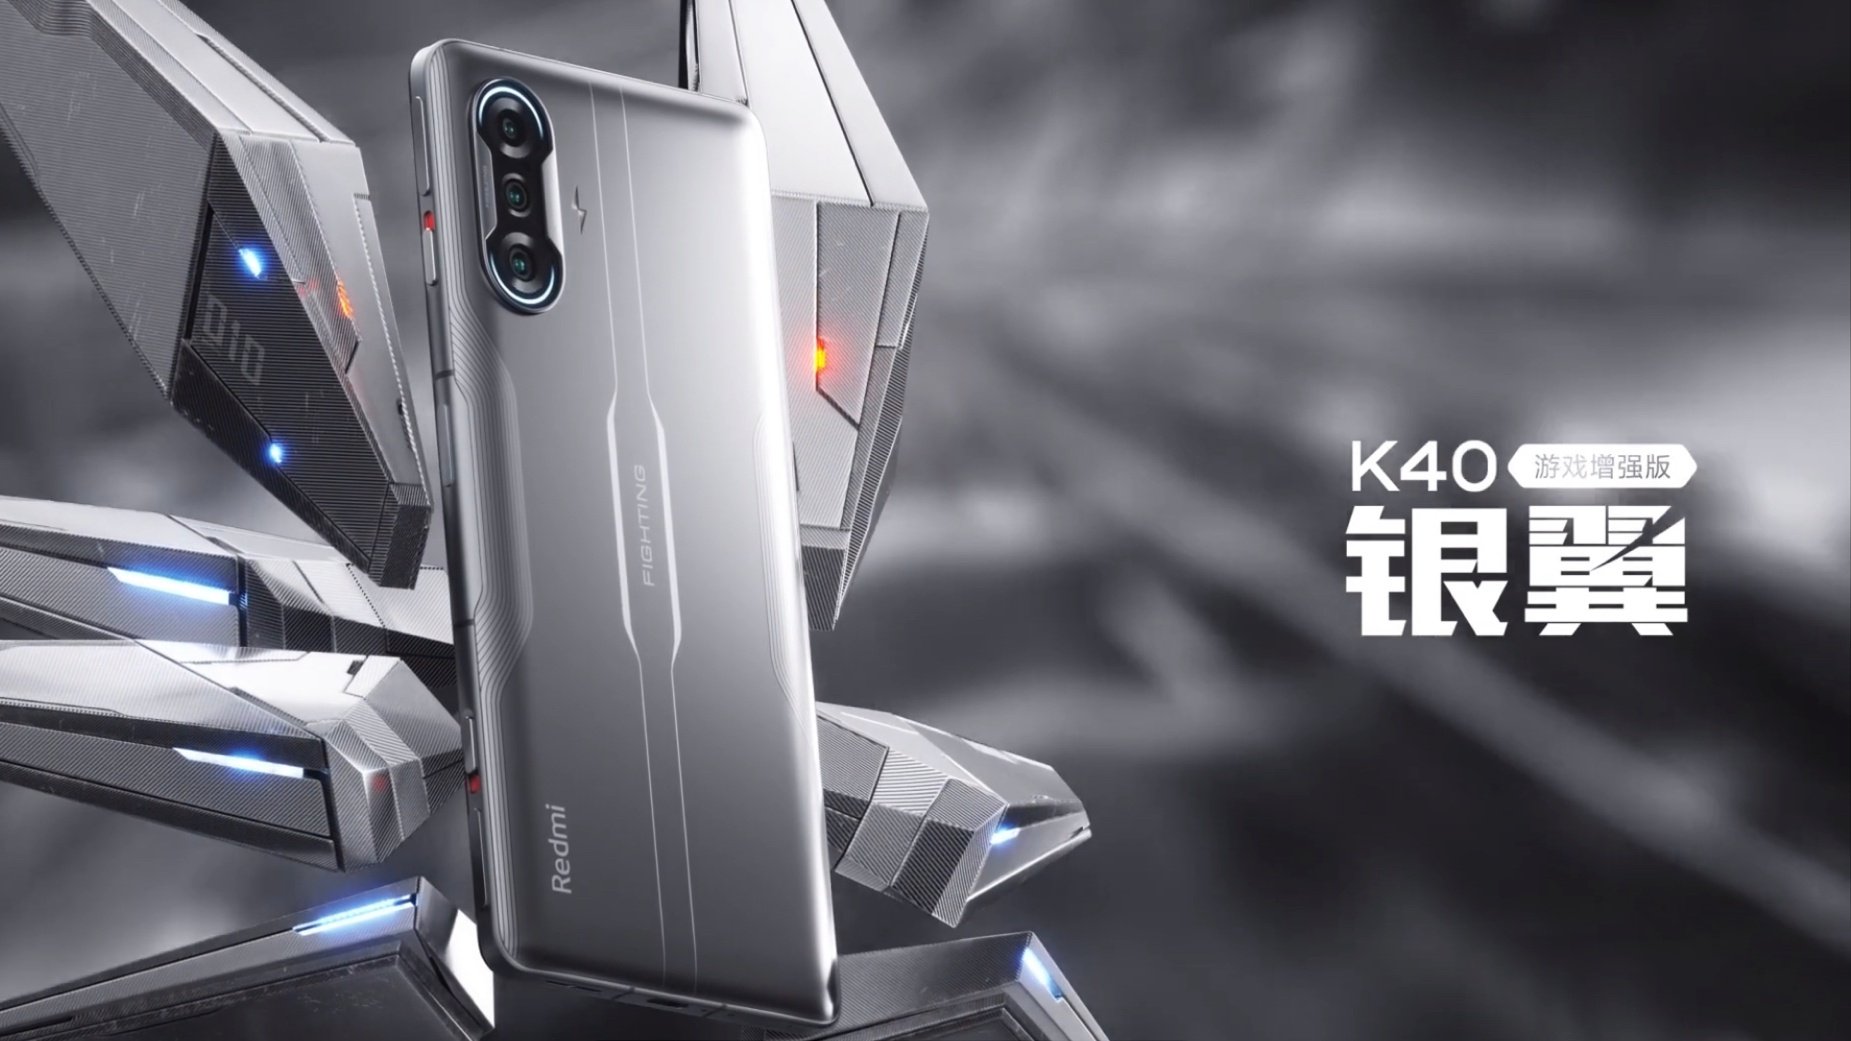 El nuevo Redmi K40 Gaming Edition ya es oficial: mucho más que un móvil gaming. Noticias Xiaomi Adictos